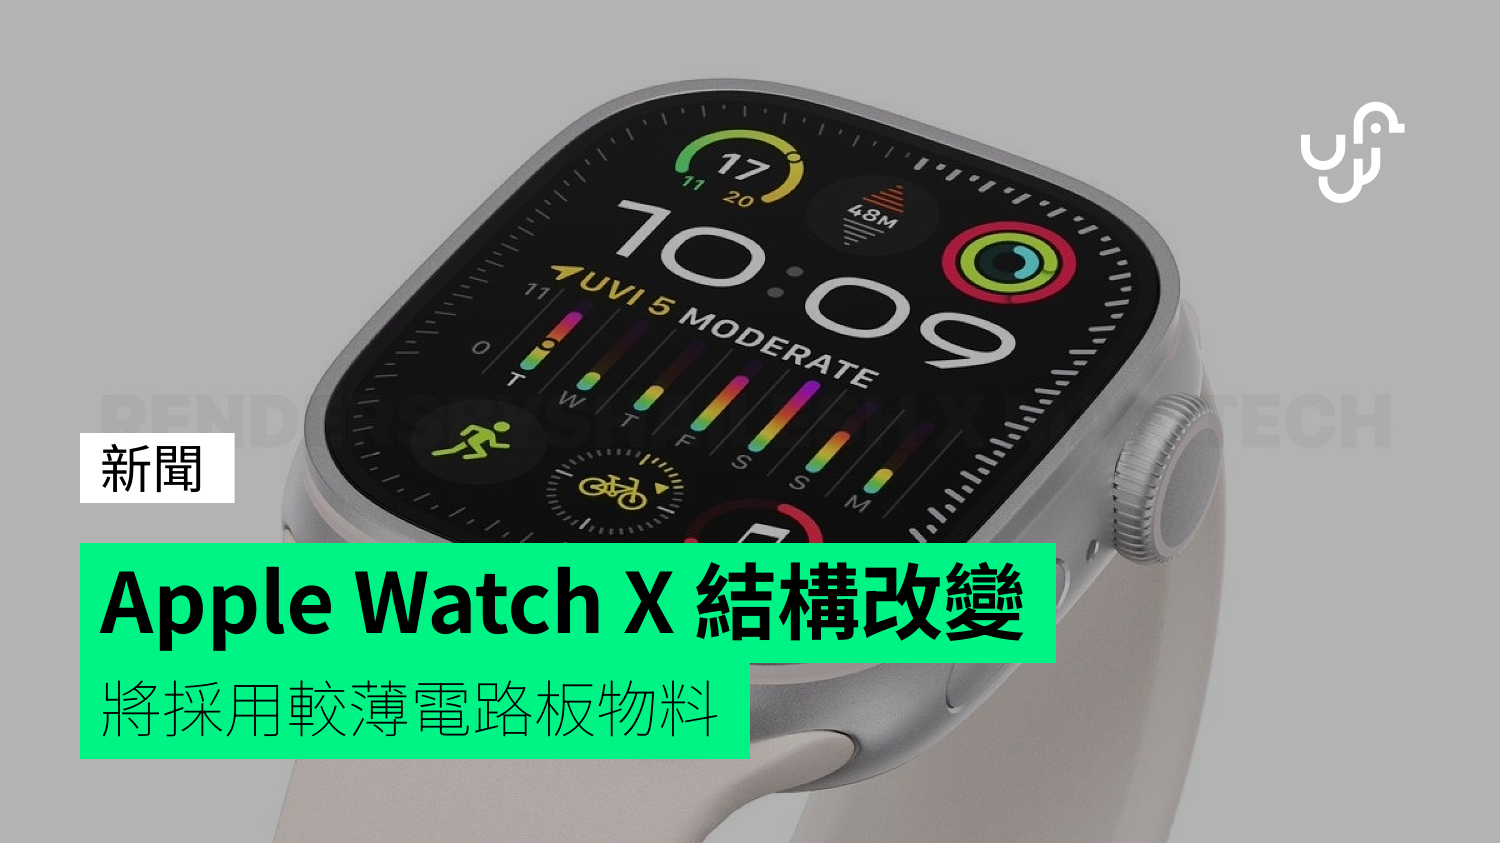 Apple Watch X 結構改變 將採用較薄電路板物料 - UNWIRE.HK